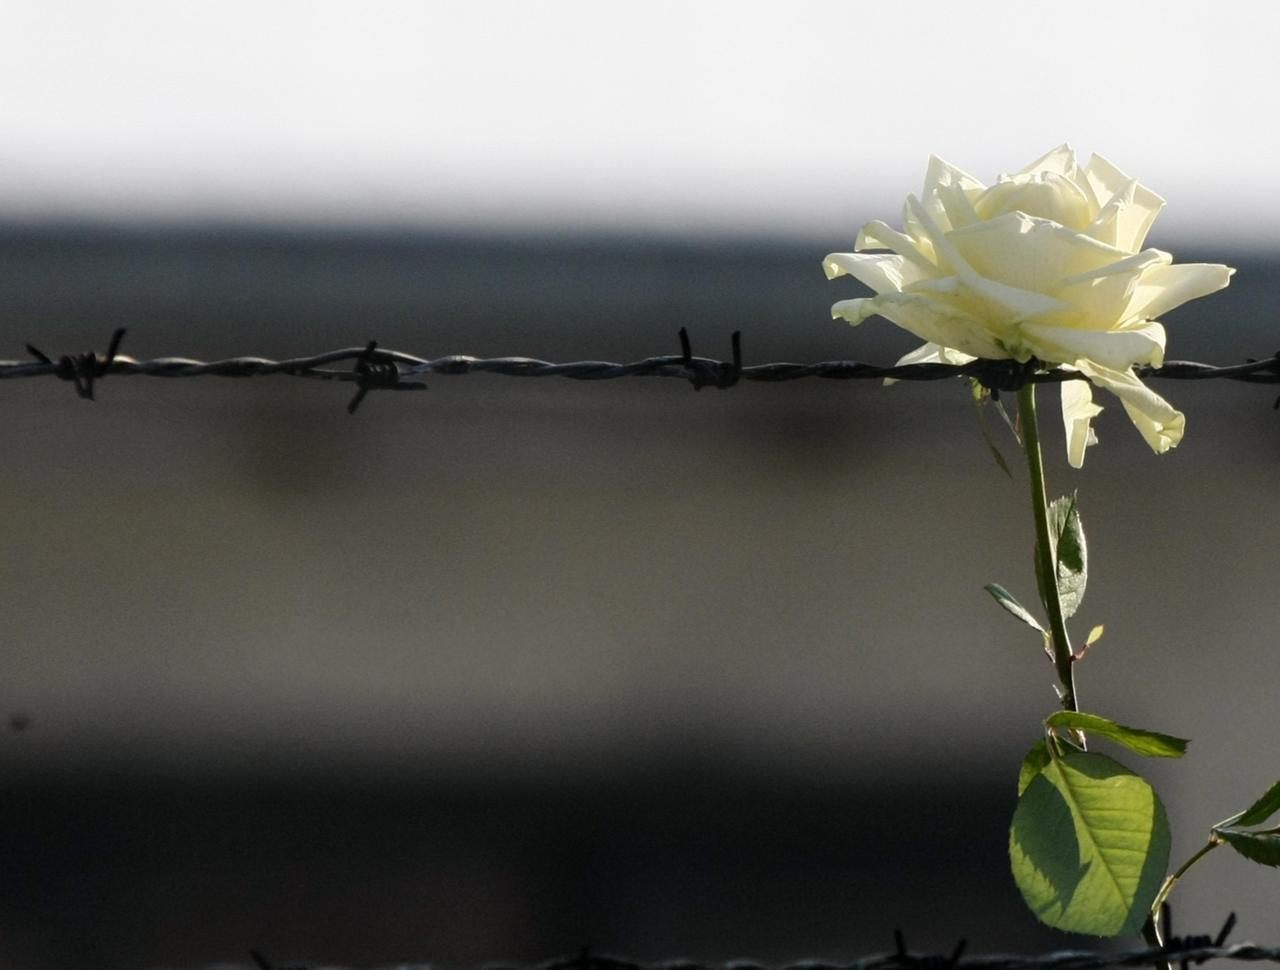 briar rose holocaust